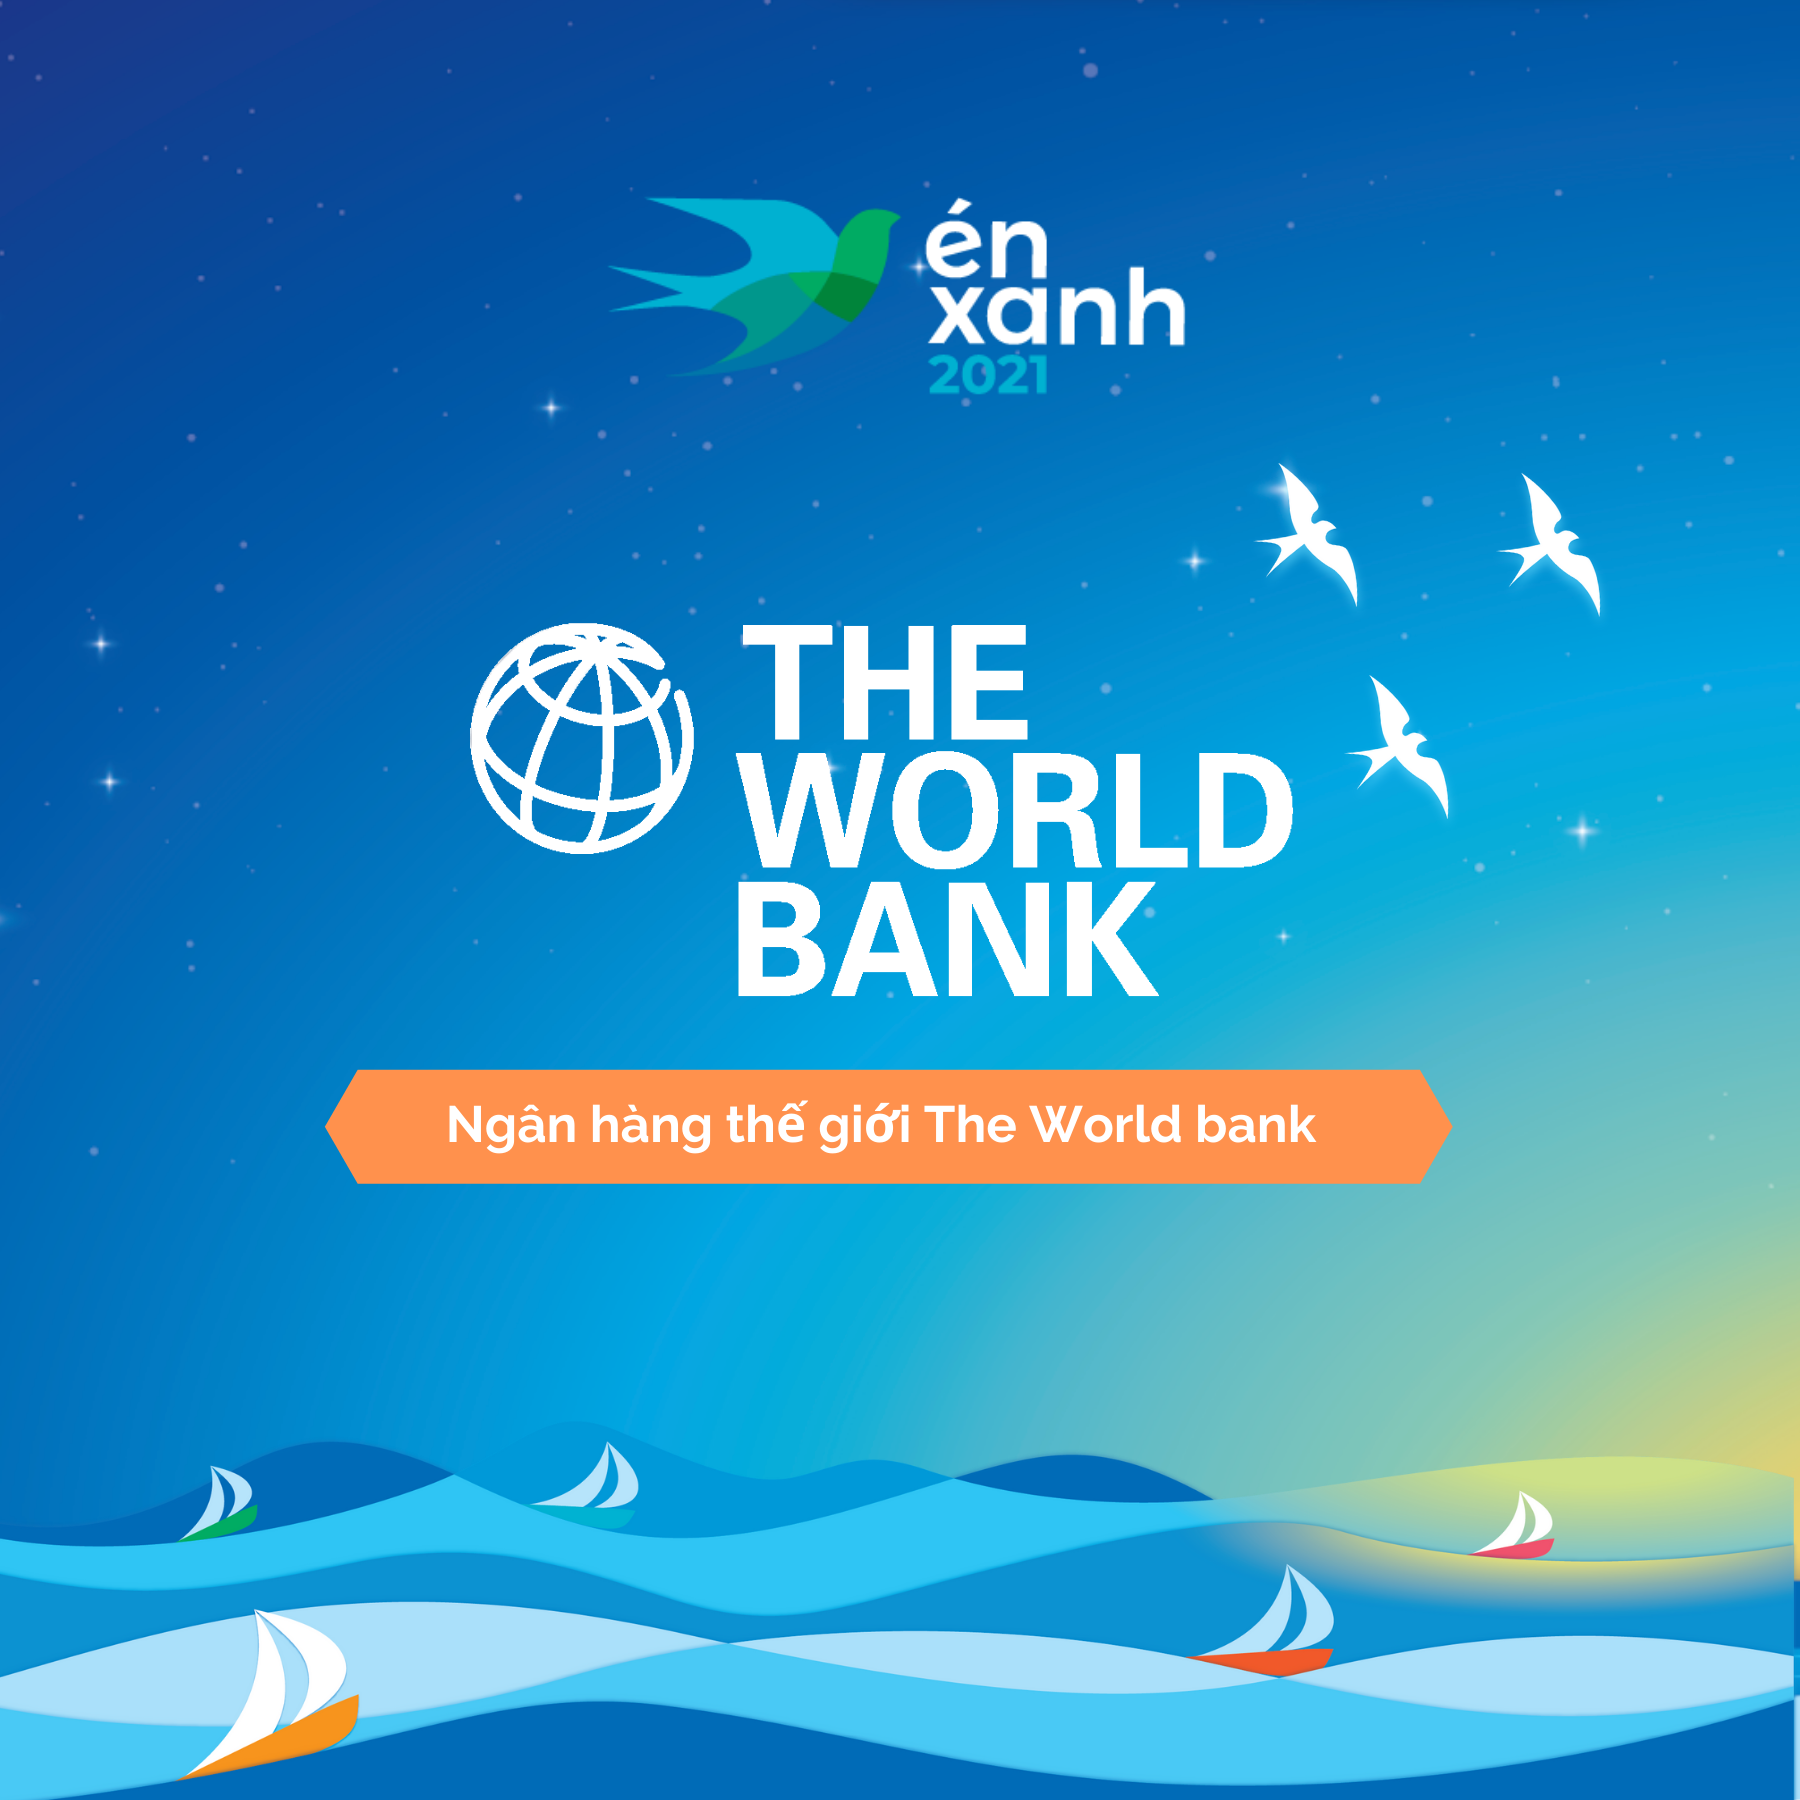 Có thể là hình ảnh về thủy vực và văn bản cho biết 'én xanh 2021 THE WORLD BANK Ngân hàng thế giới The World bank'